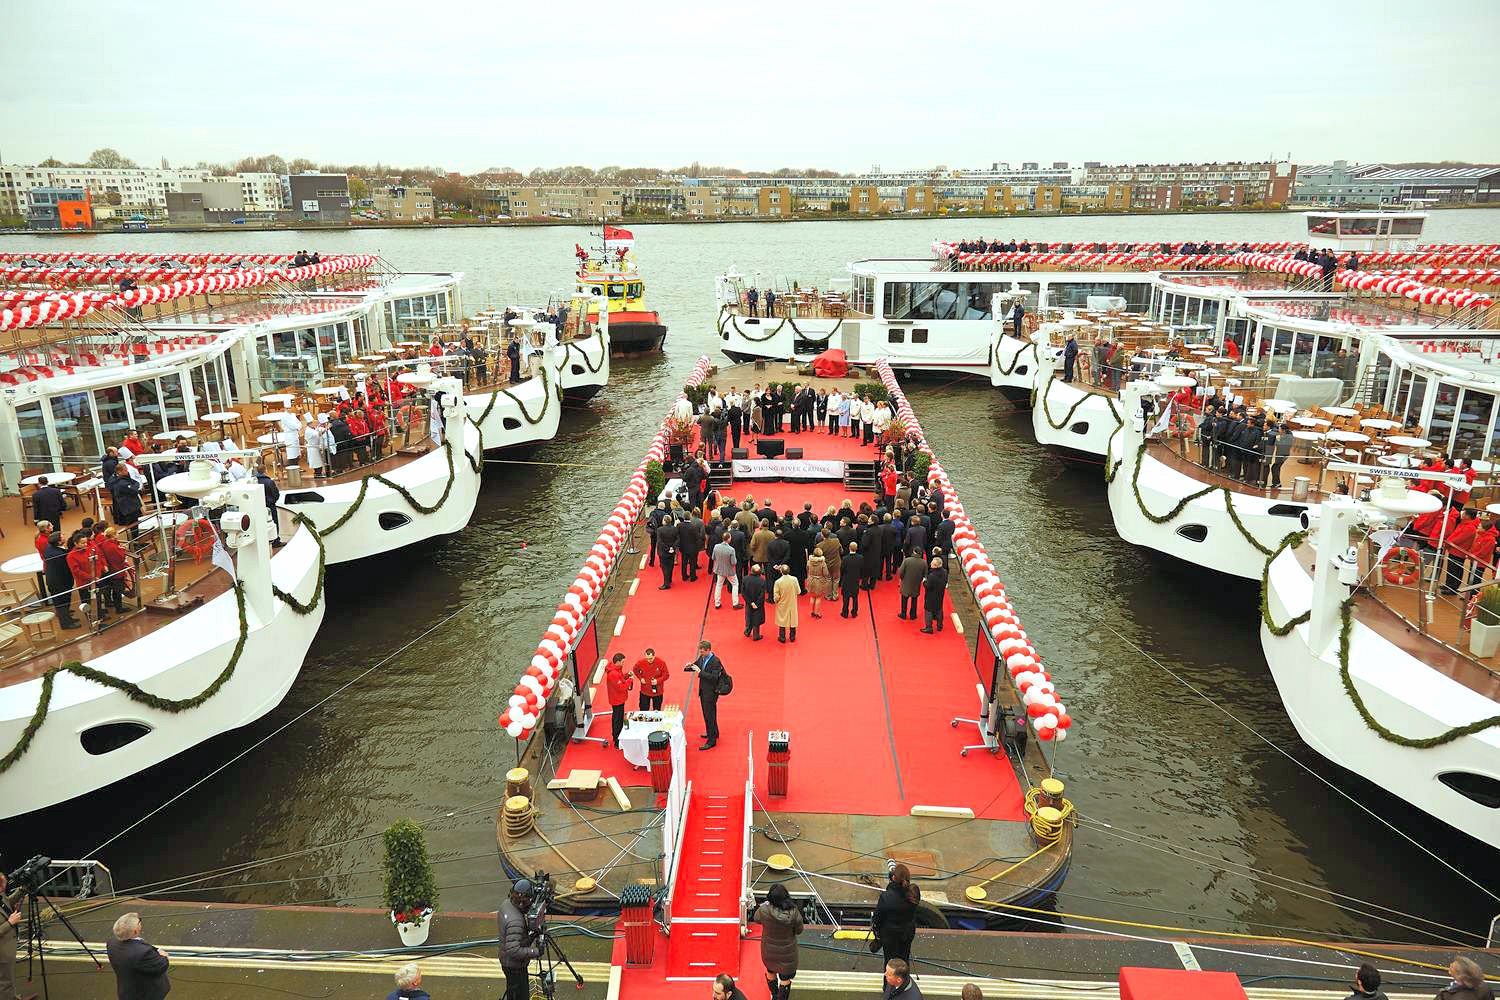 Nine Viking Longships were christened in Amsterdam on March 17. Photo: Courtesy of Viking Cruises. Unauthorized use is prohibited.